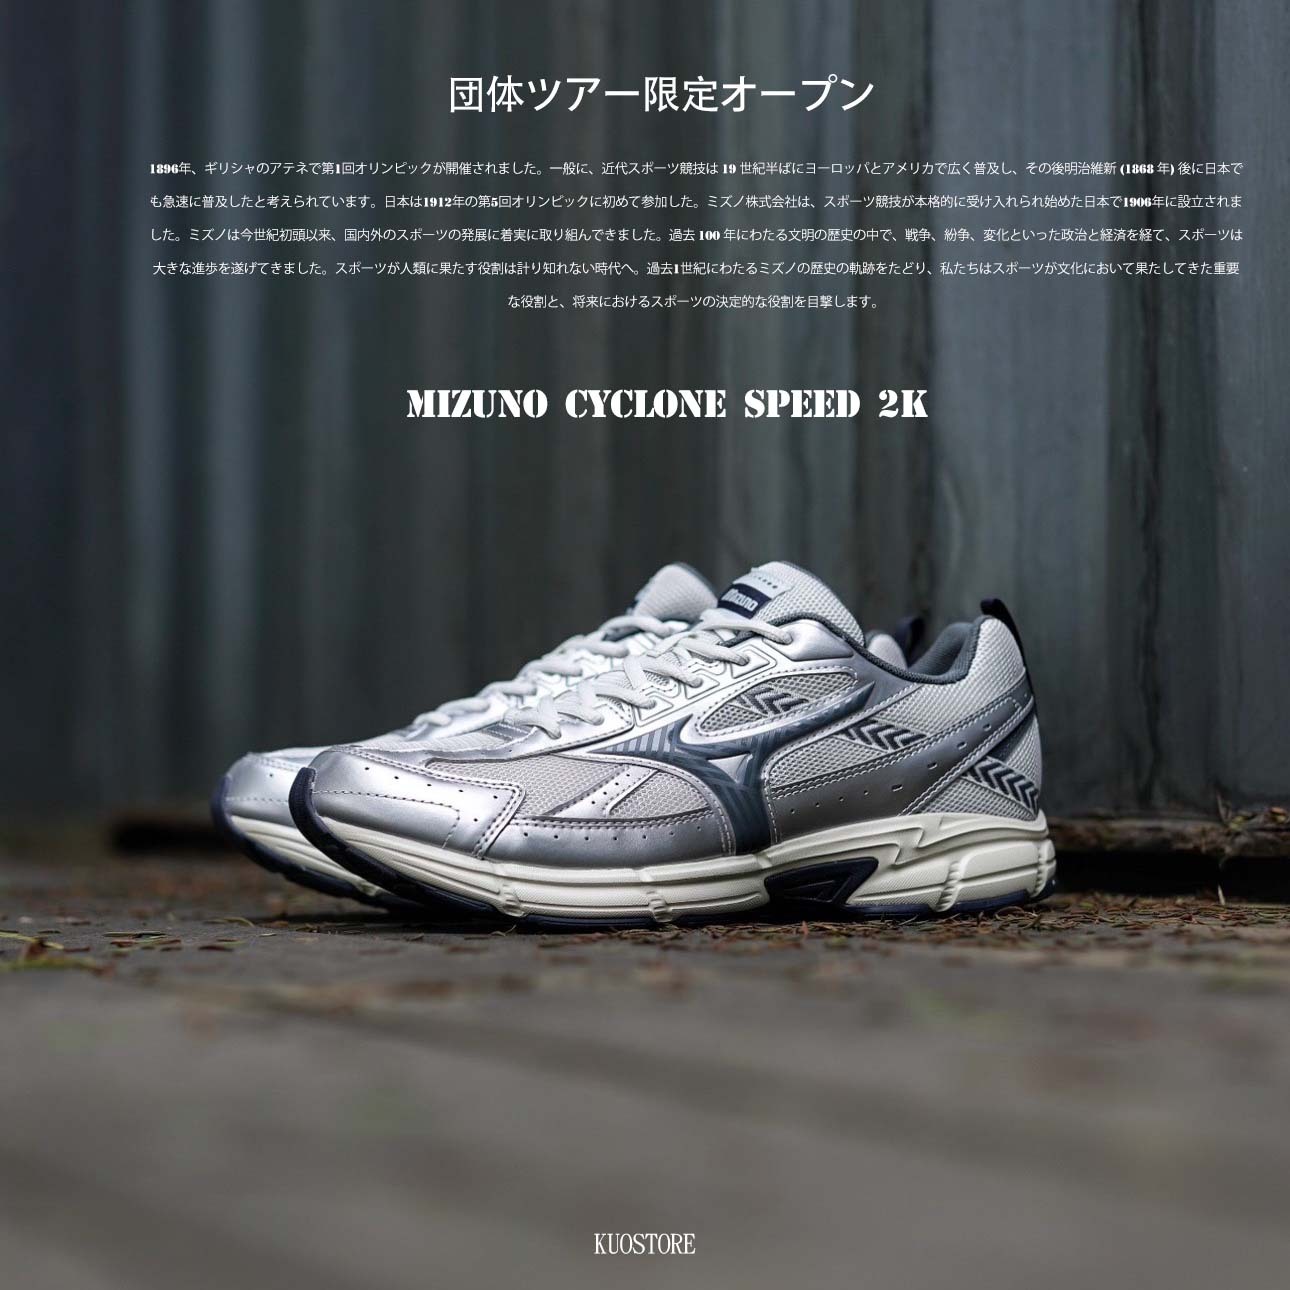 預購) M IZUNO Cyclone Speed 2k 美津濃慢跑鞋銀灰色D1GH222913